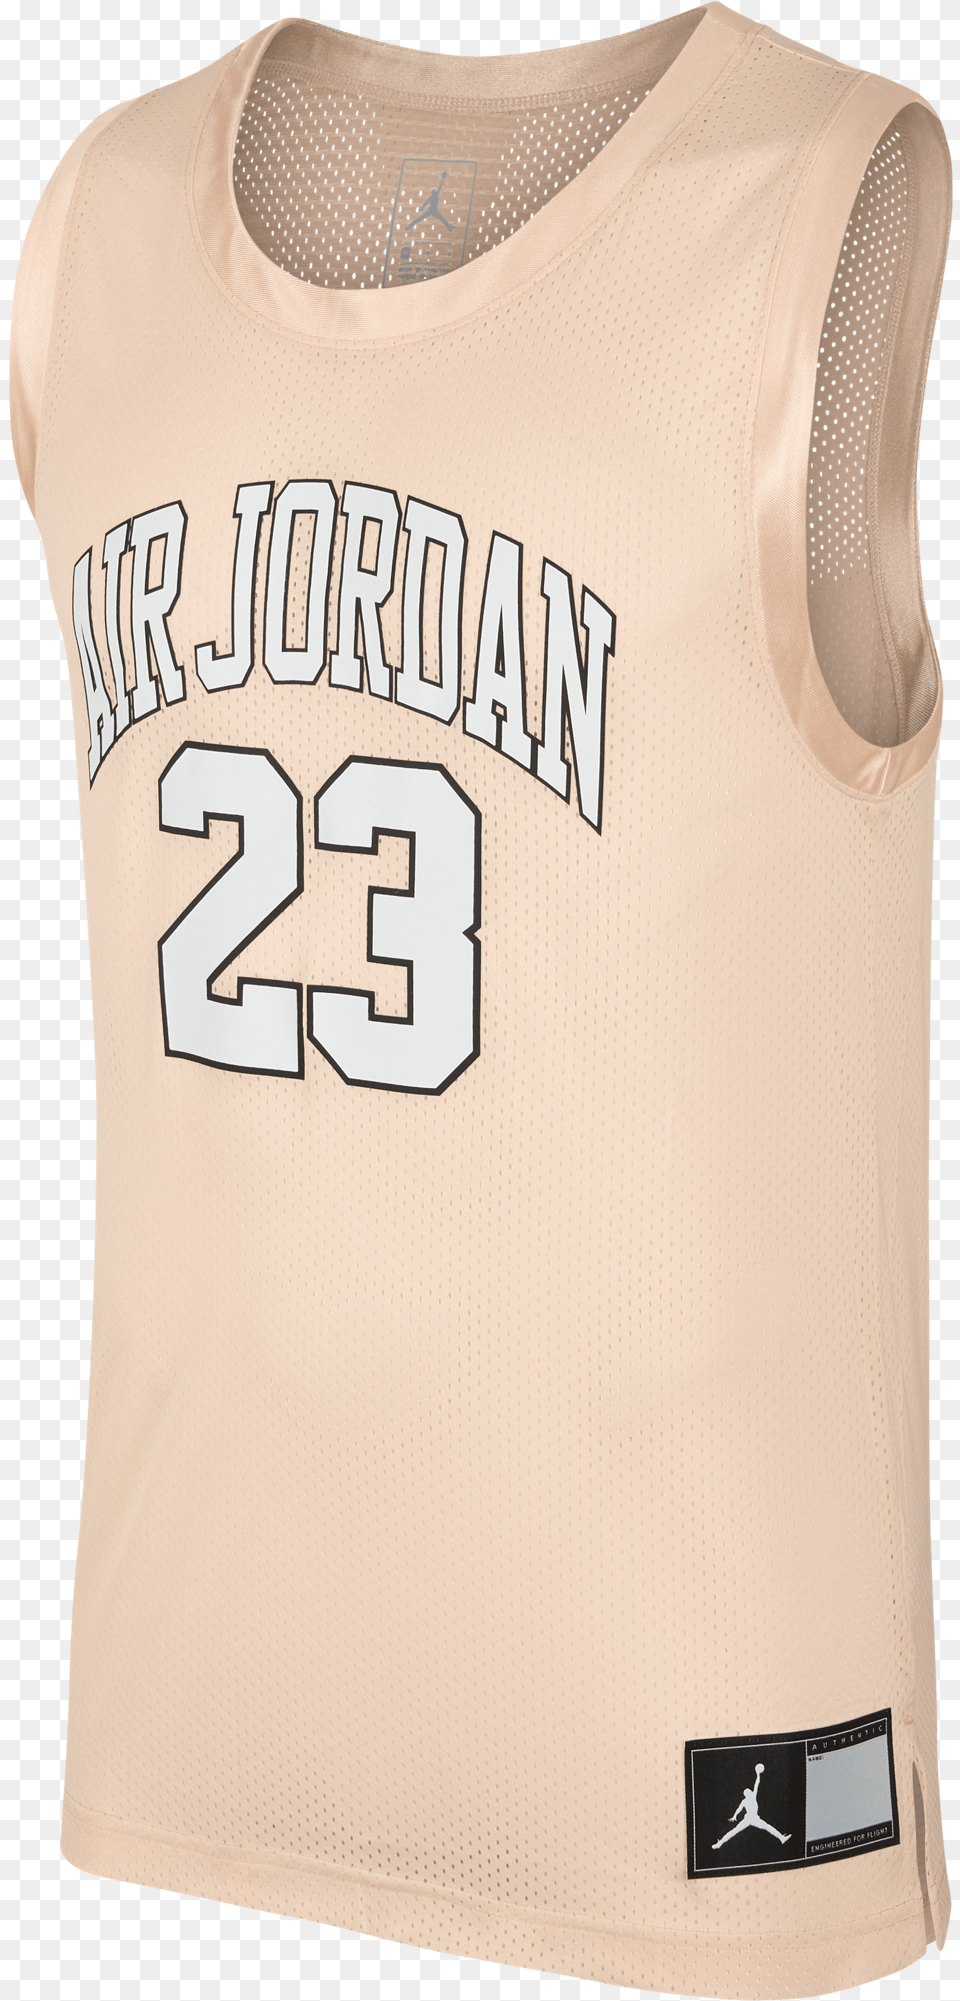 Air Jordan Dna Distorted Jersey, Clothing, Shirt Free Transparent Png